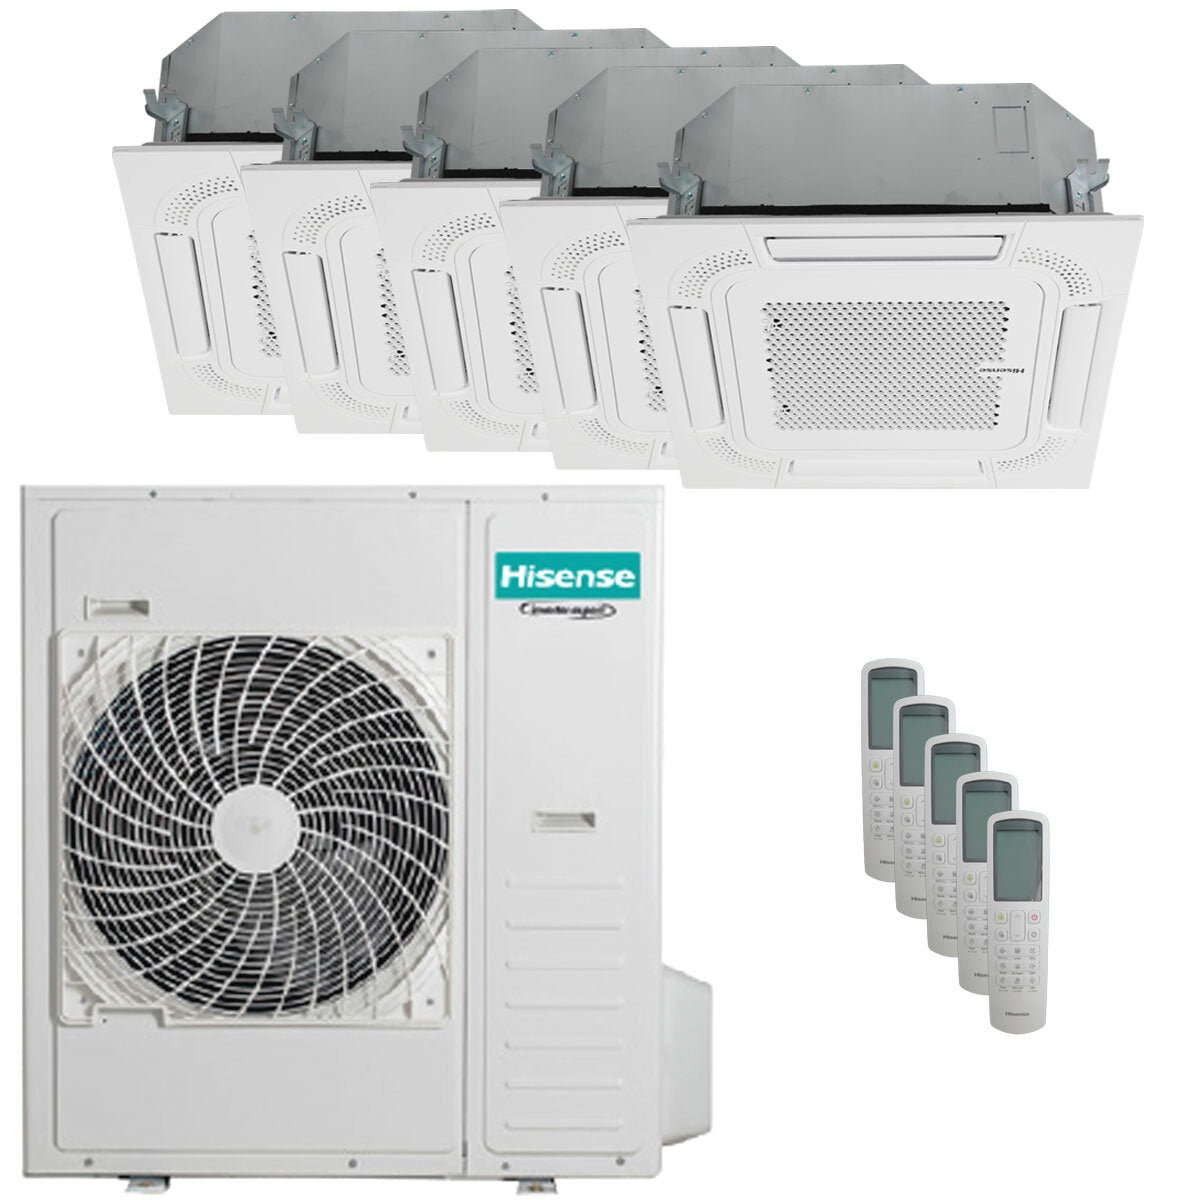 Hisense air conditioner ACT penta split 9000+9000+12000+12000+12000 BTU inverter outdoor unit 12.5 kW